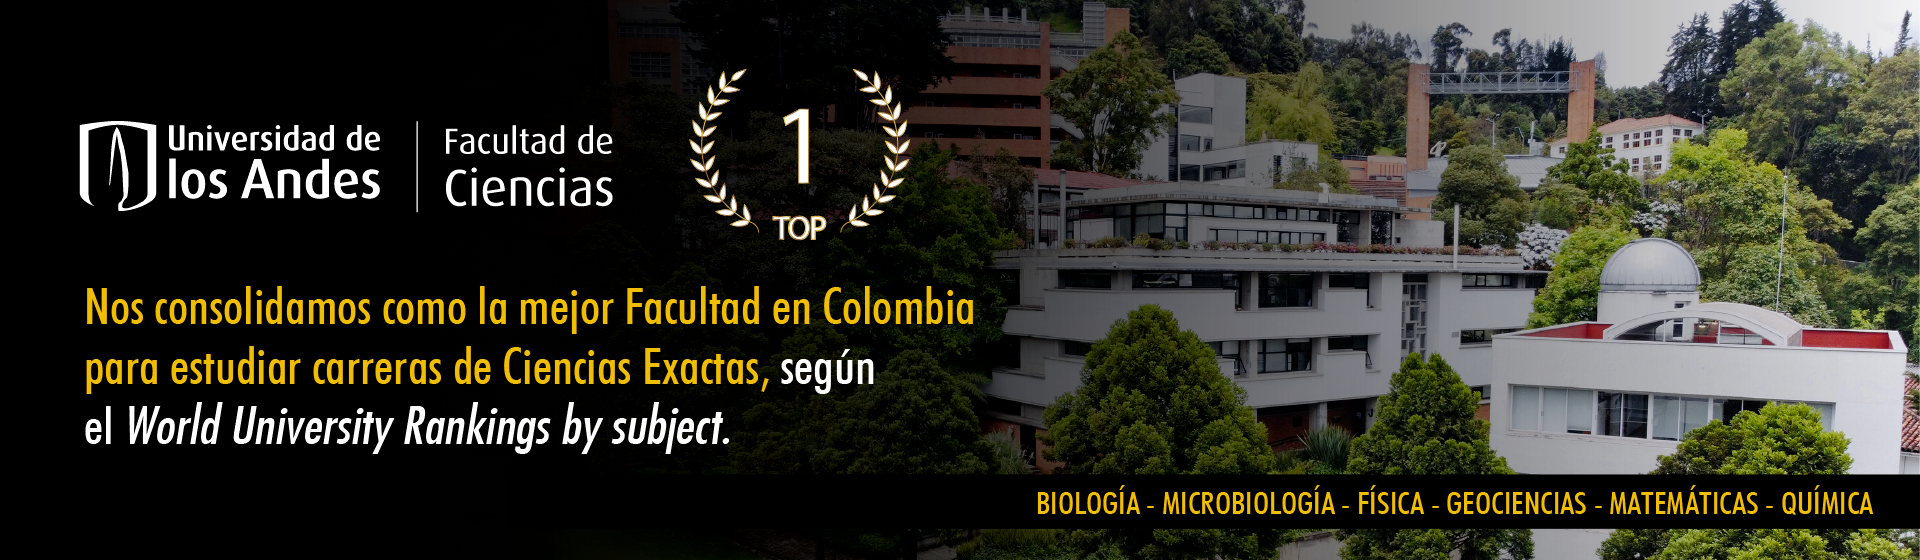 Facultad de Ciencias - Universidad de los Andes